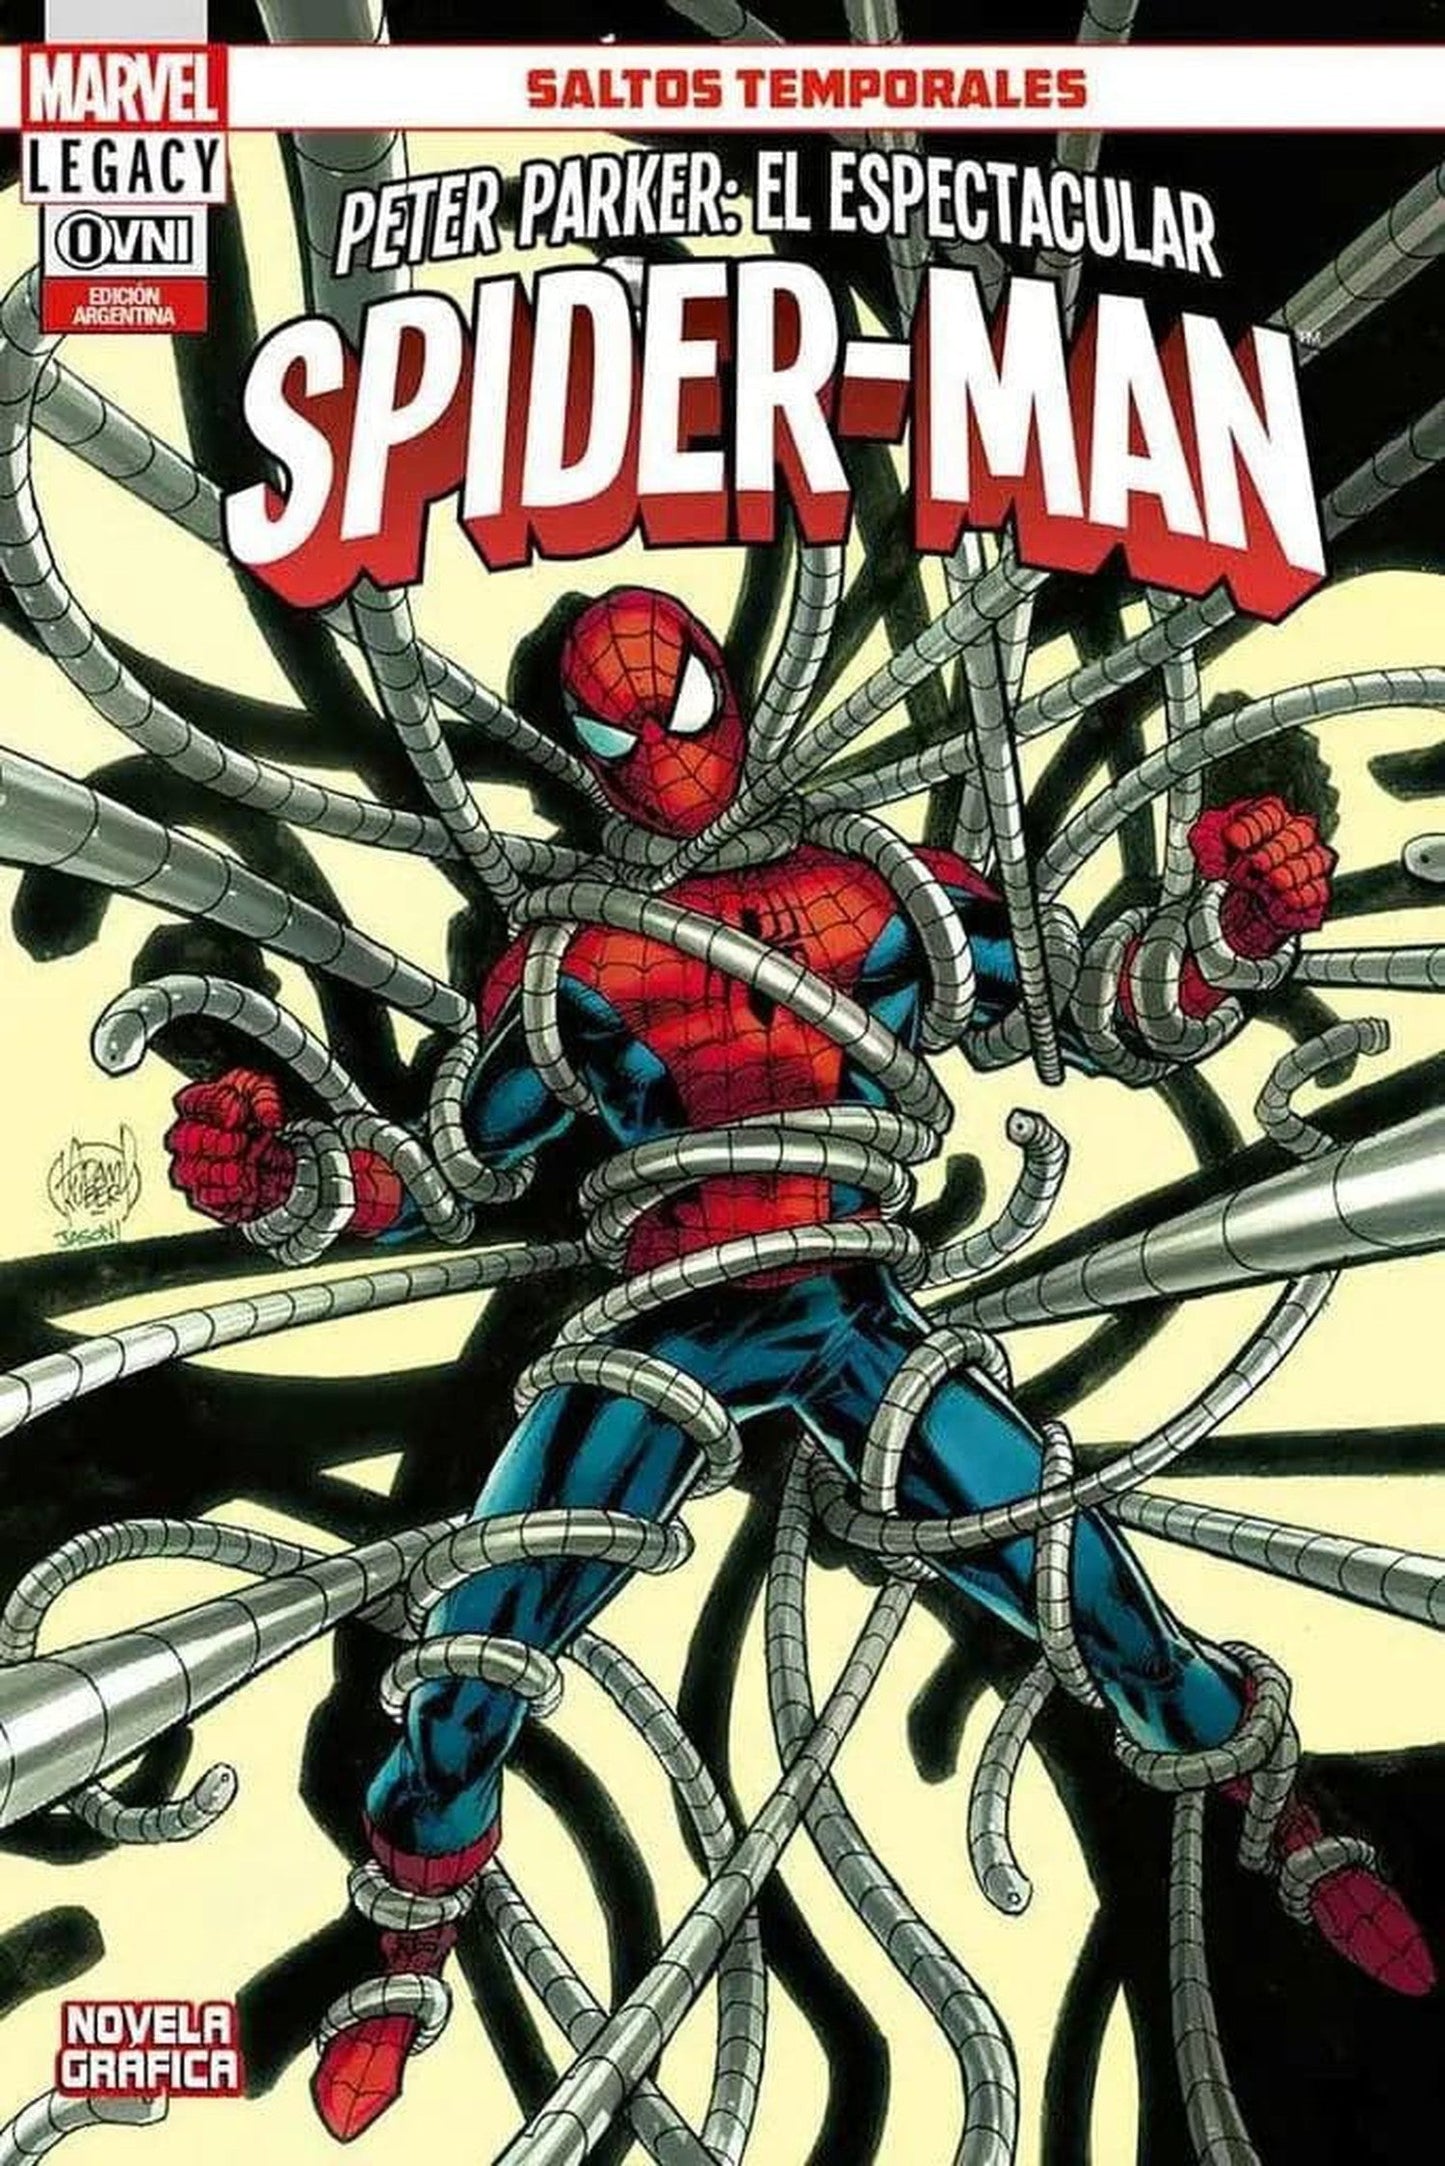 Peter Parker: El Espectacular Spider-Man Vol.3